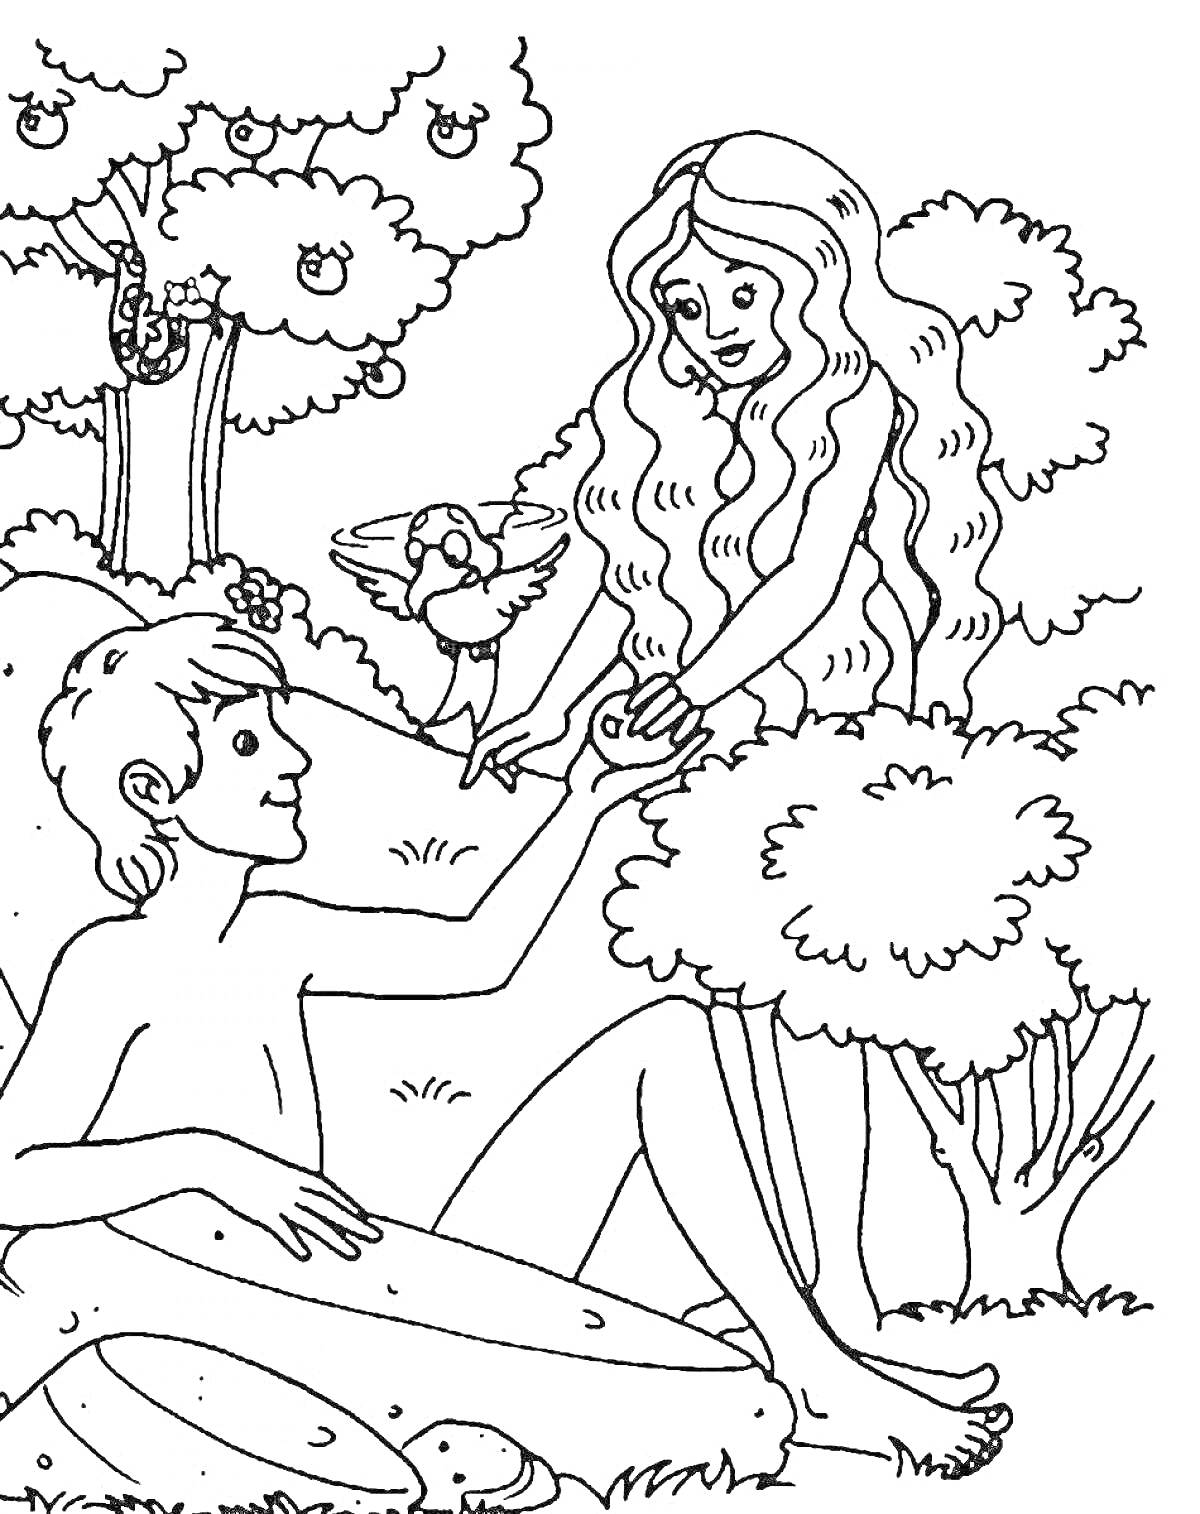 Раскраска Человек и женщина держатся за руки в лесу с деревьями, птицей и белкой